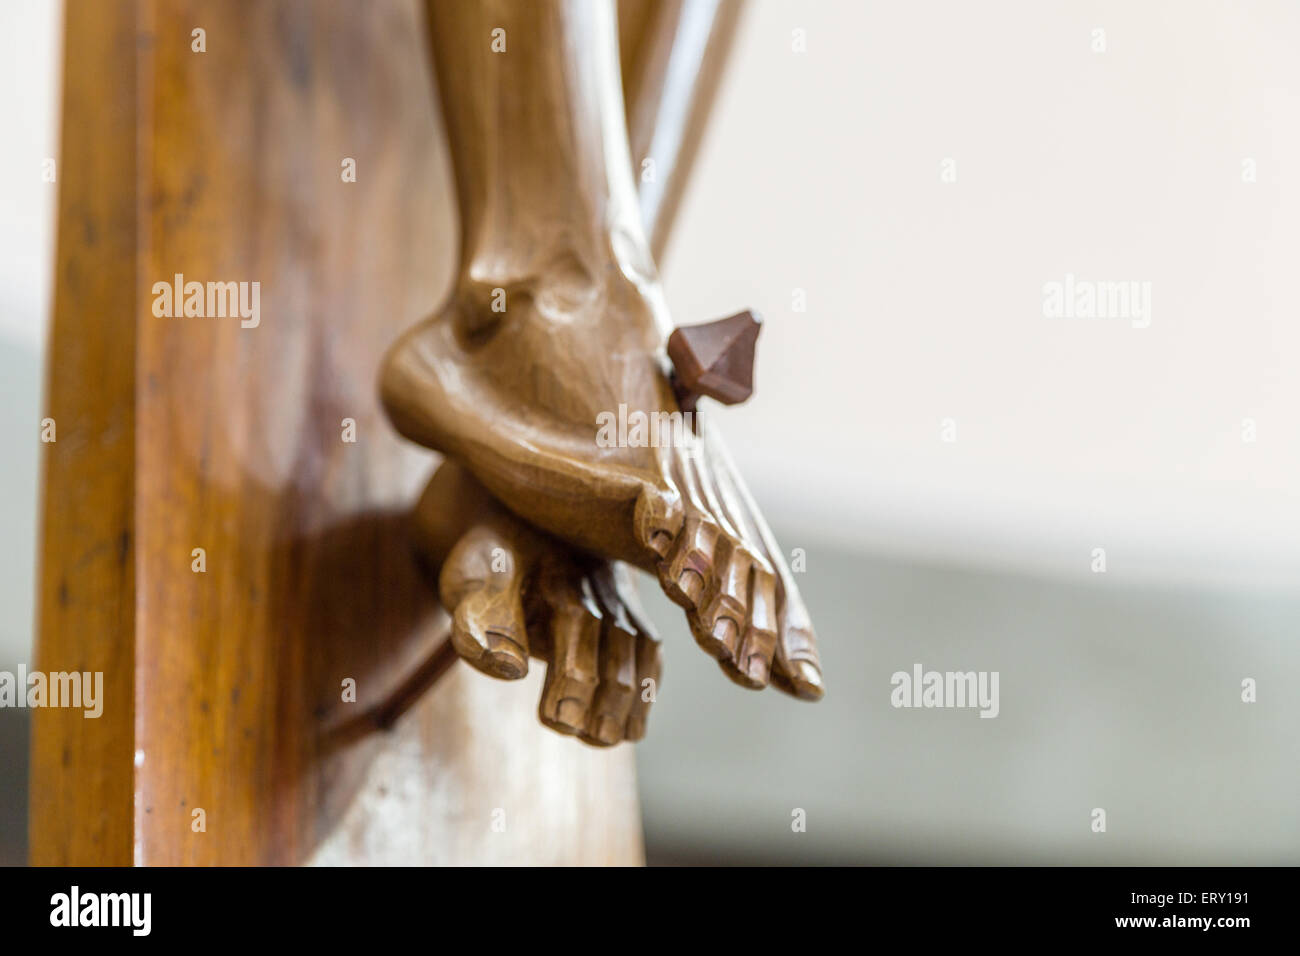 Dettaglio dei piedi inchiodati in un legno scolpito statua della crocifissione di Gesù Cristo Foto Stock